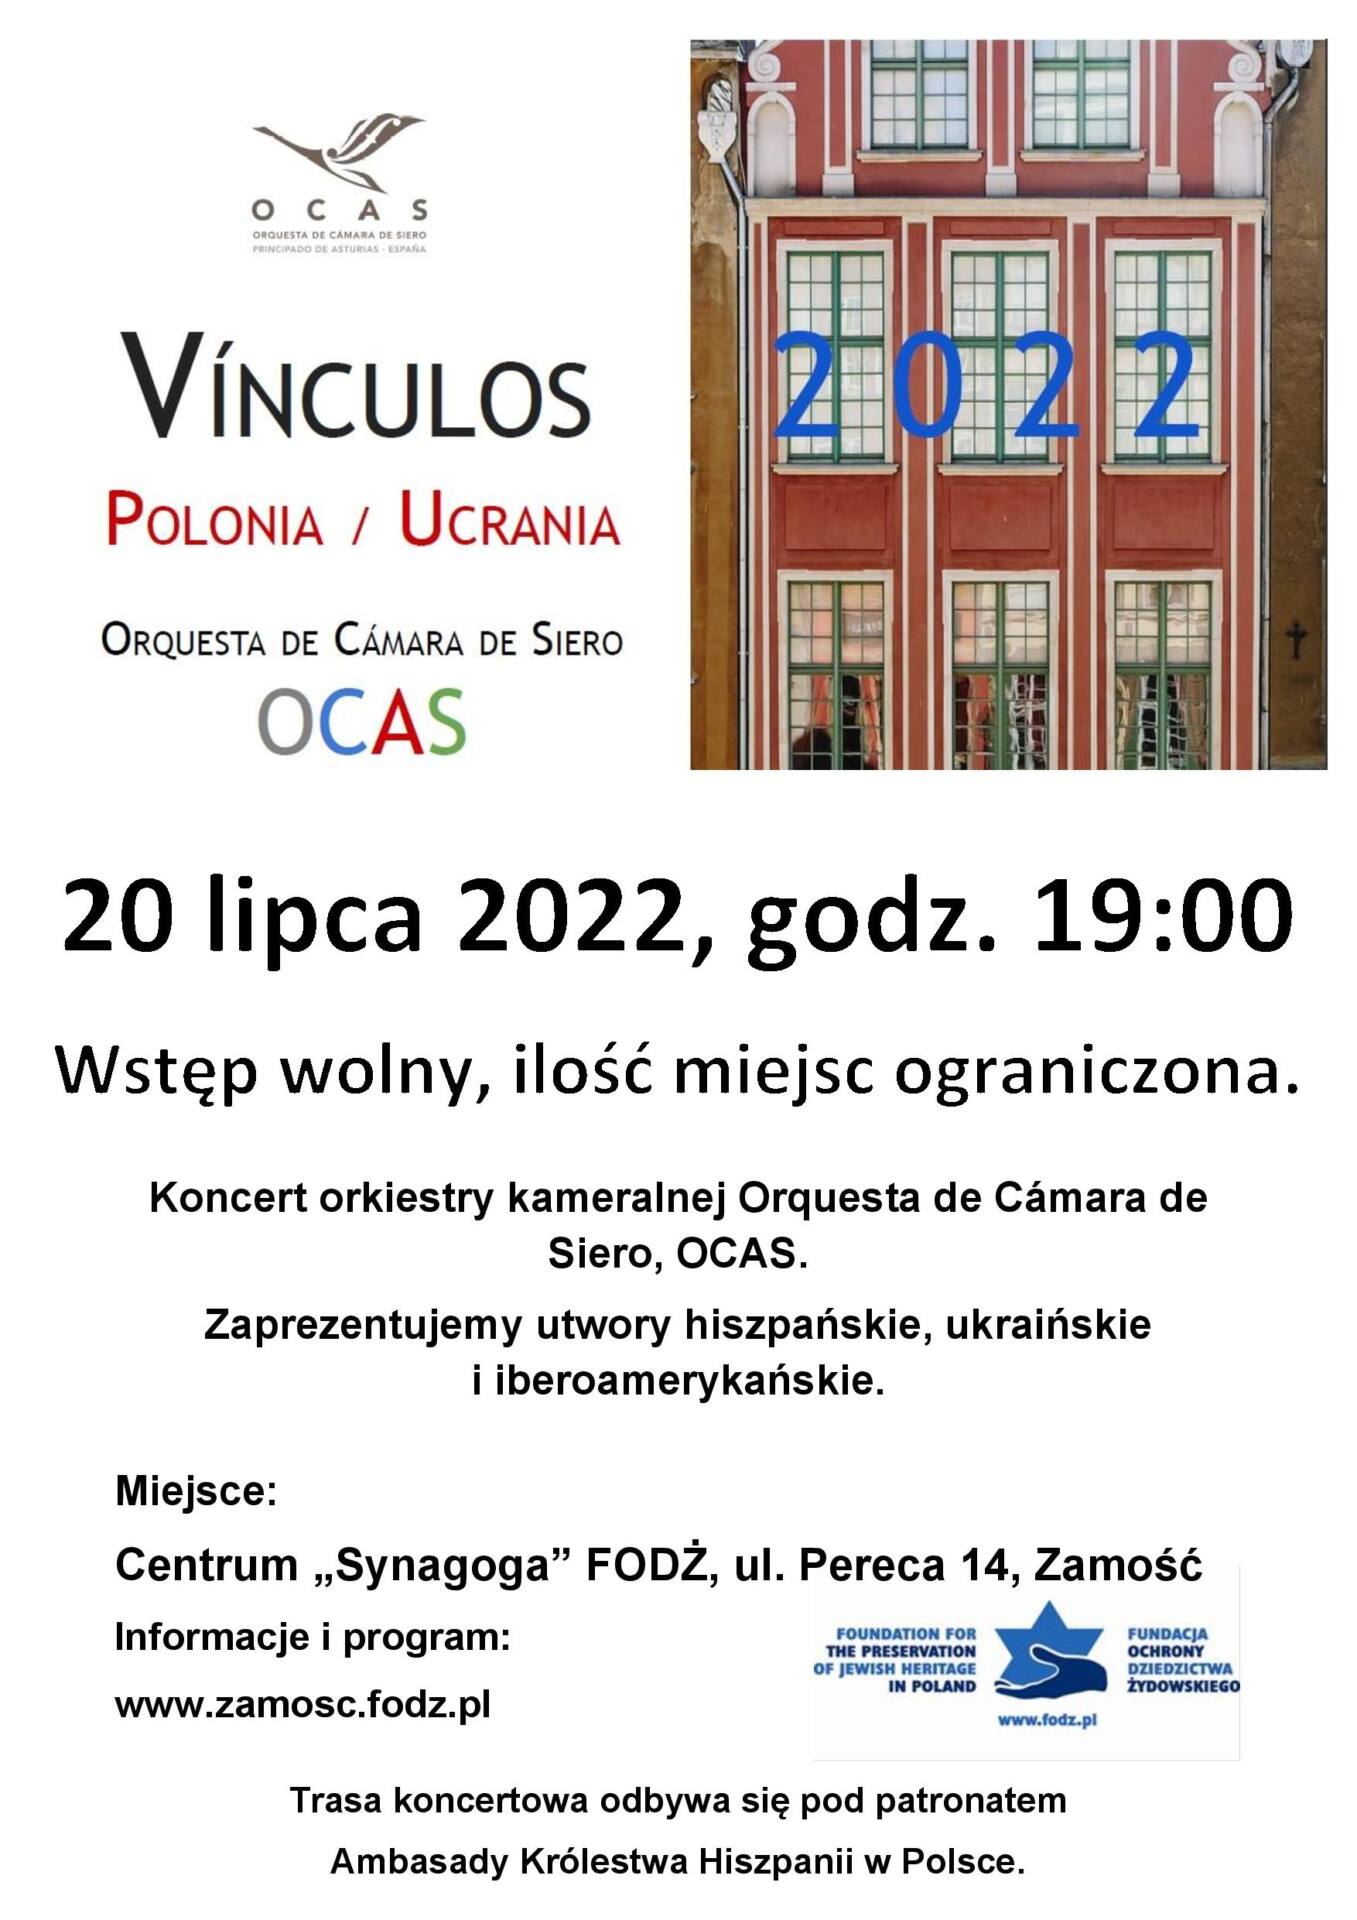 plakat 5 VÍNCULOS 2022 Polska/ Ukraina - koncert w Centrum "Synagoga" FODŻ